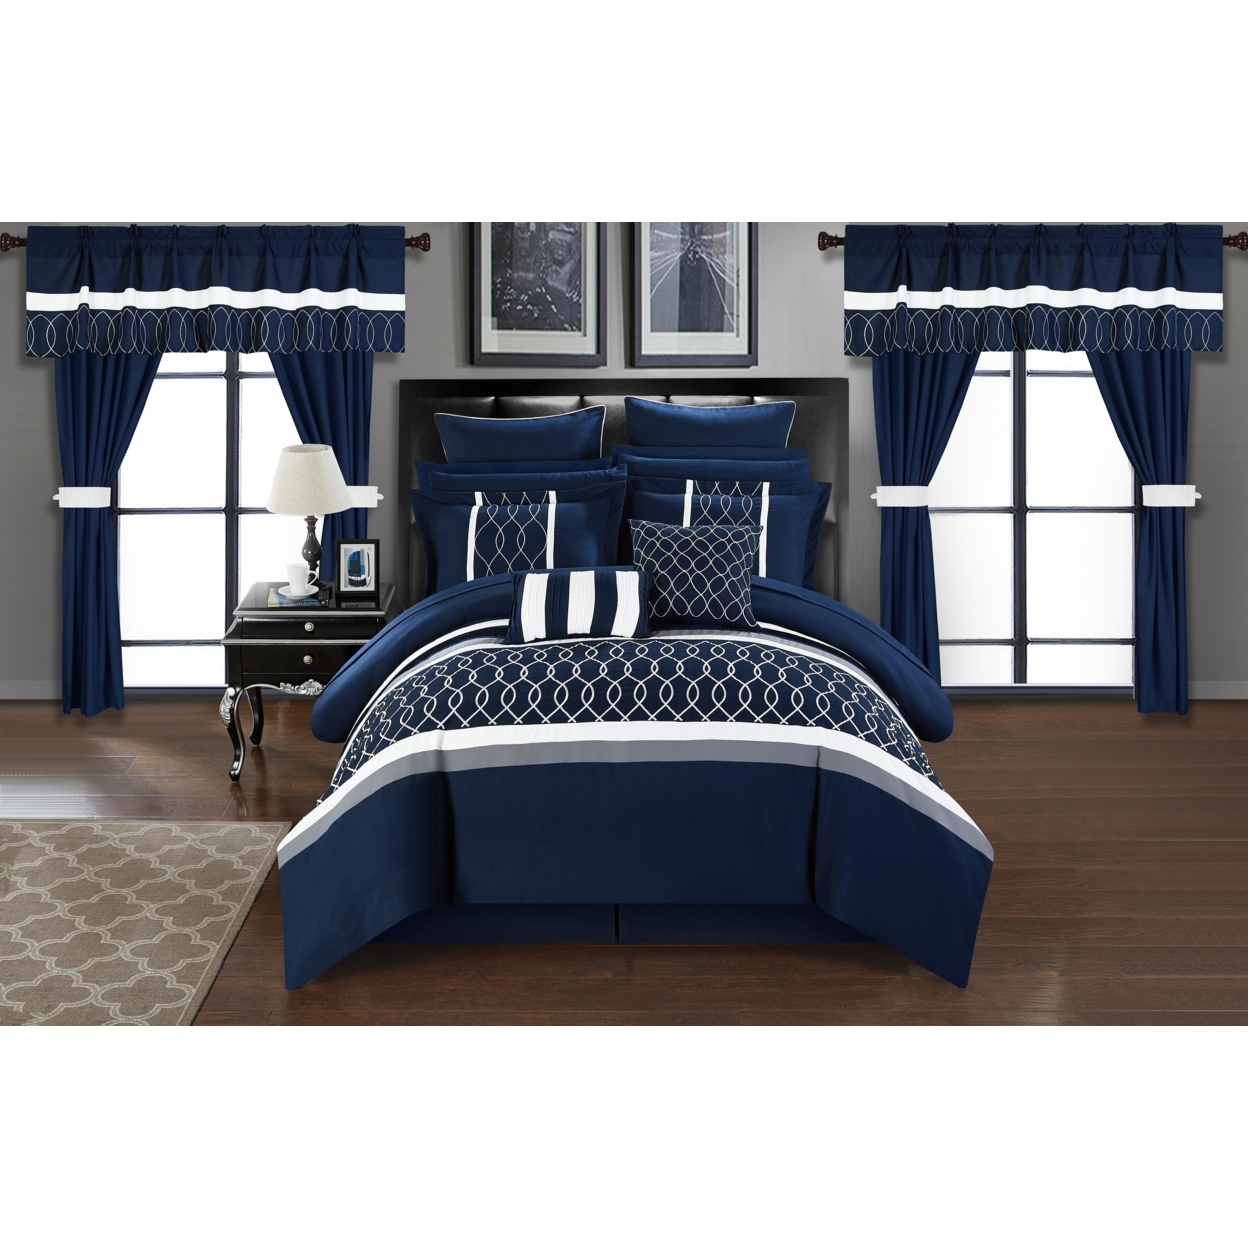 Topaz 24 Piece Comforter Bed In A Bag Pleated Ruffled Designer Embellished Bedding Set - Beige, King